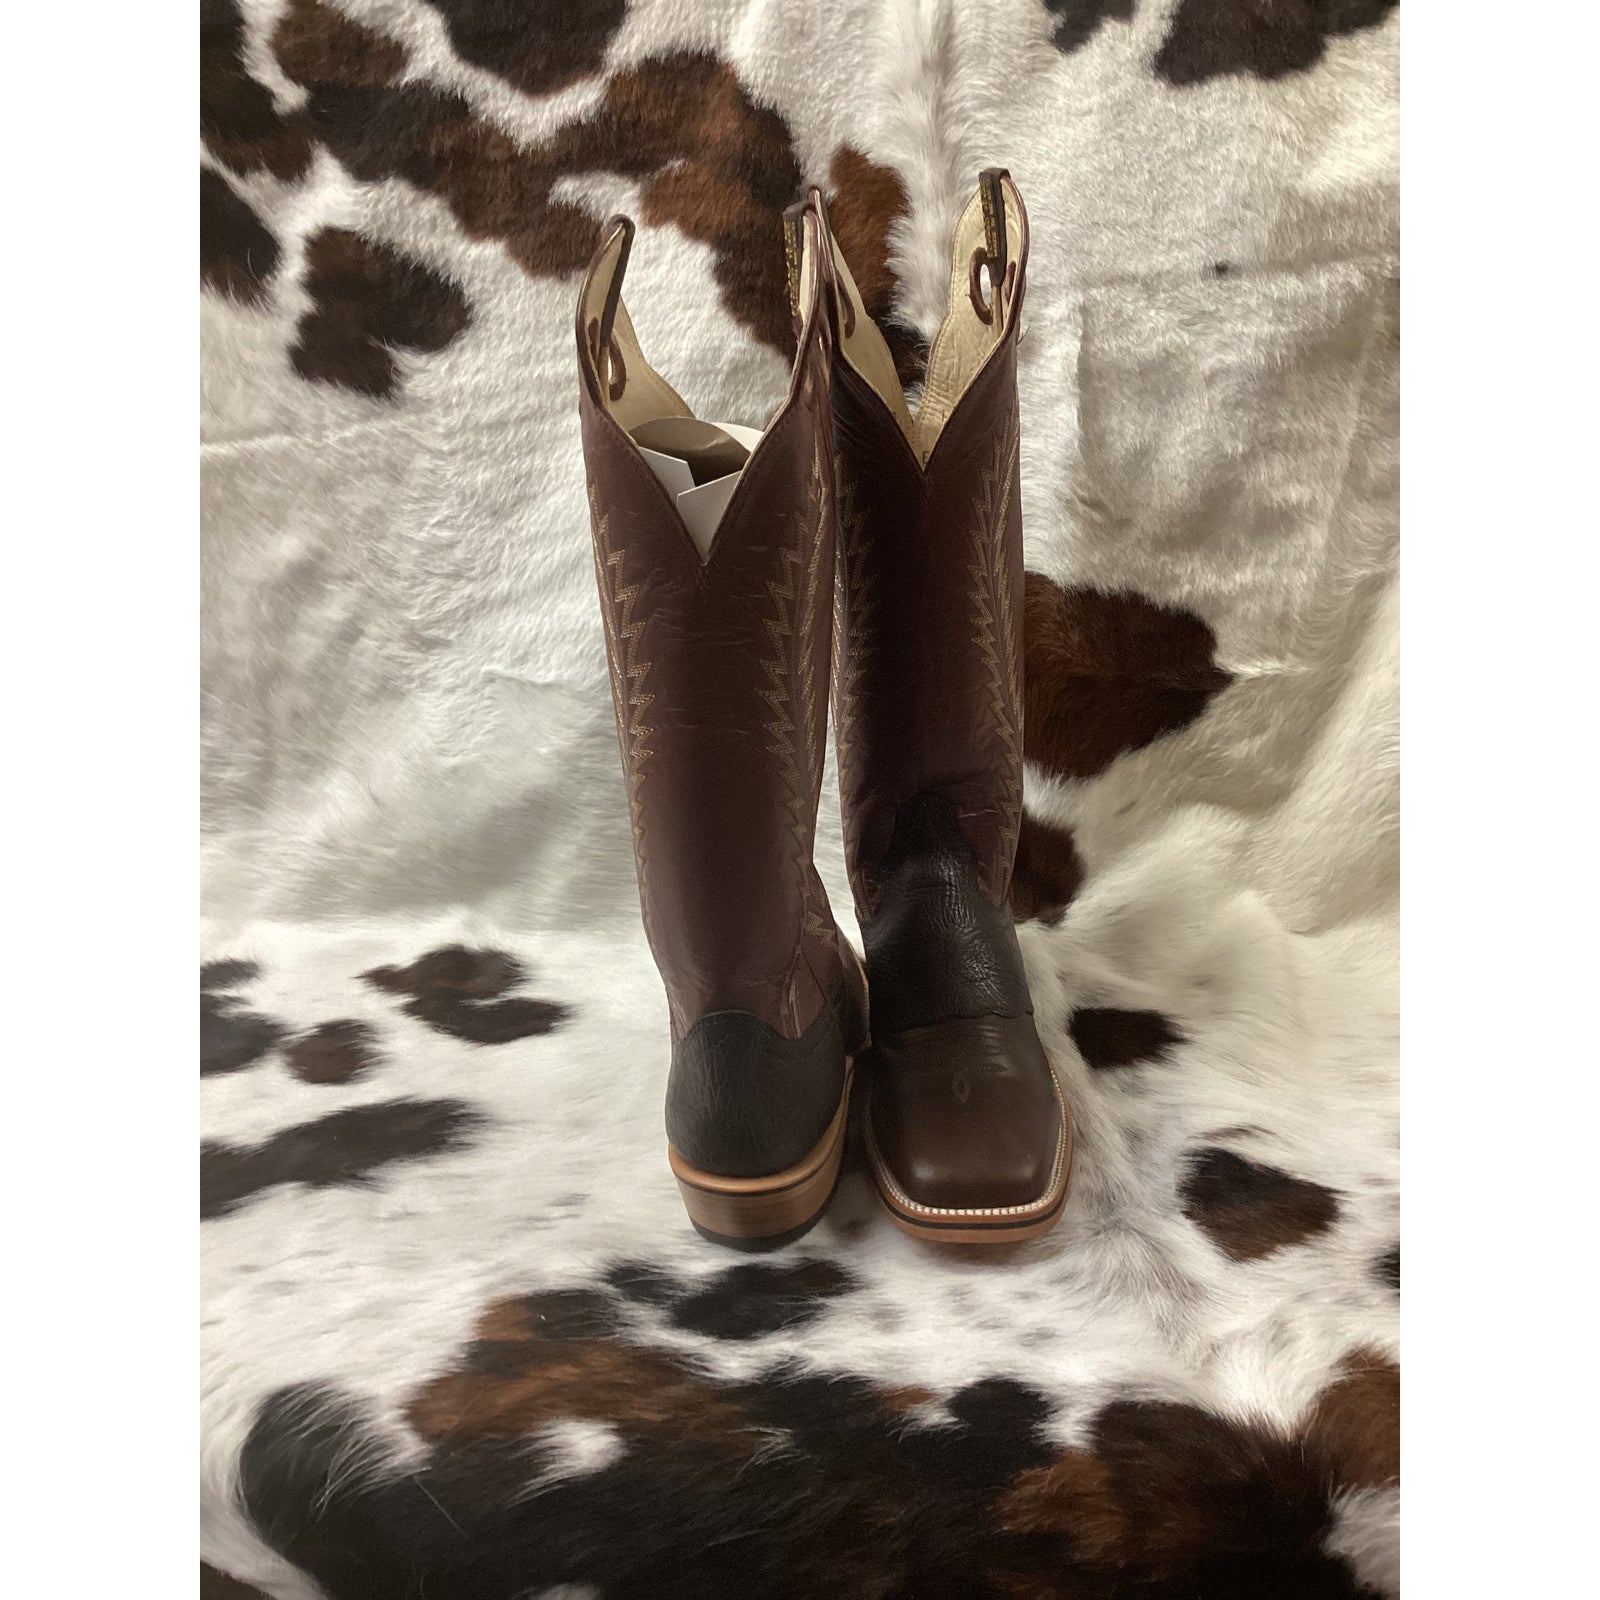 Hondo Men’s Cowboy Boots 2012X Crazy Brown